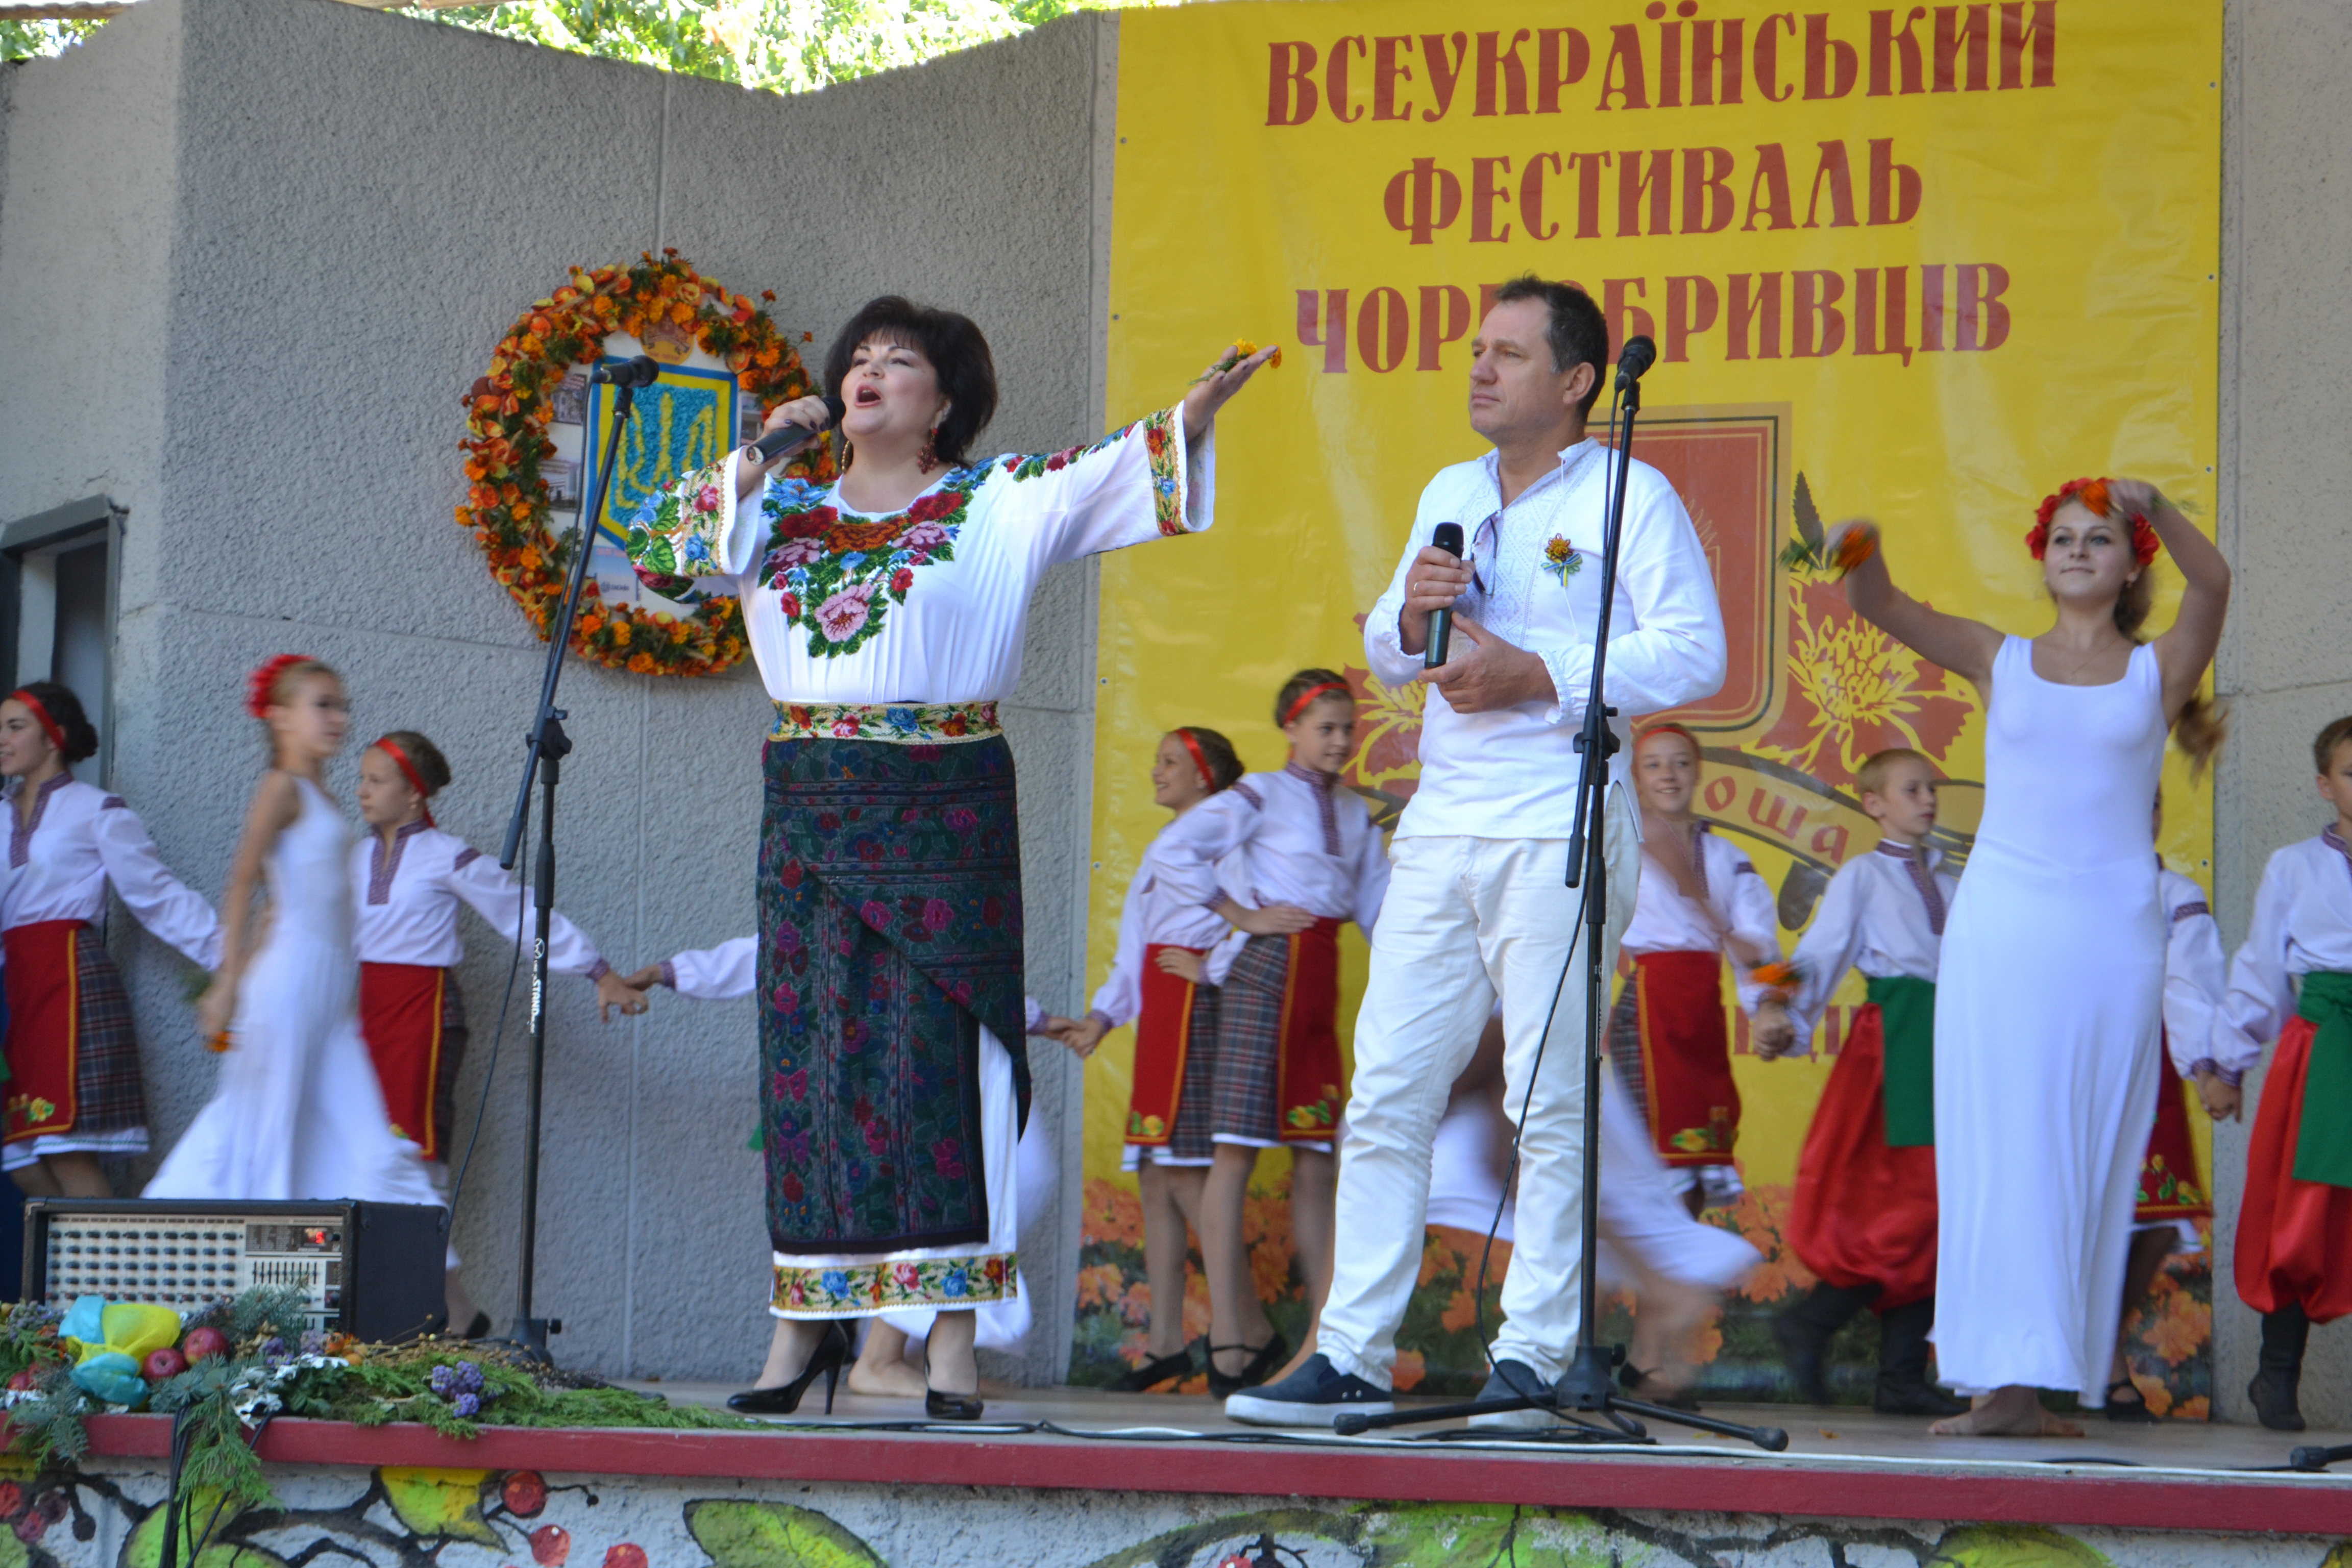 Всеукраїнський фестиваль Чорнобривців у Золотоноші